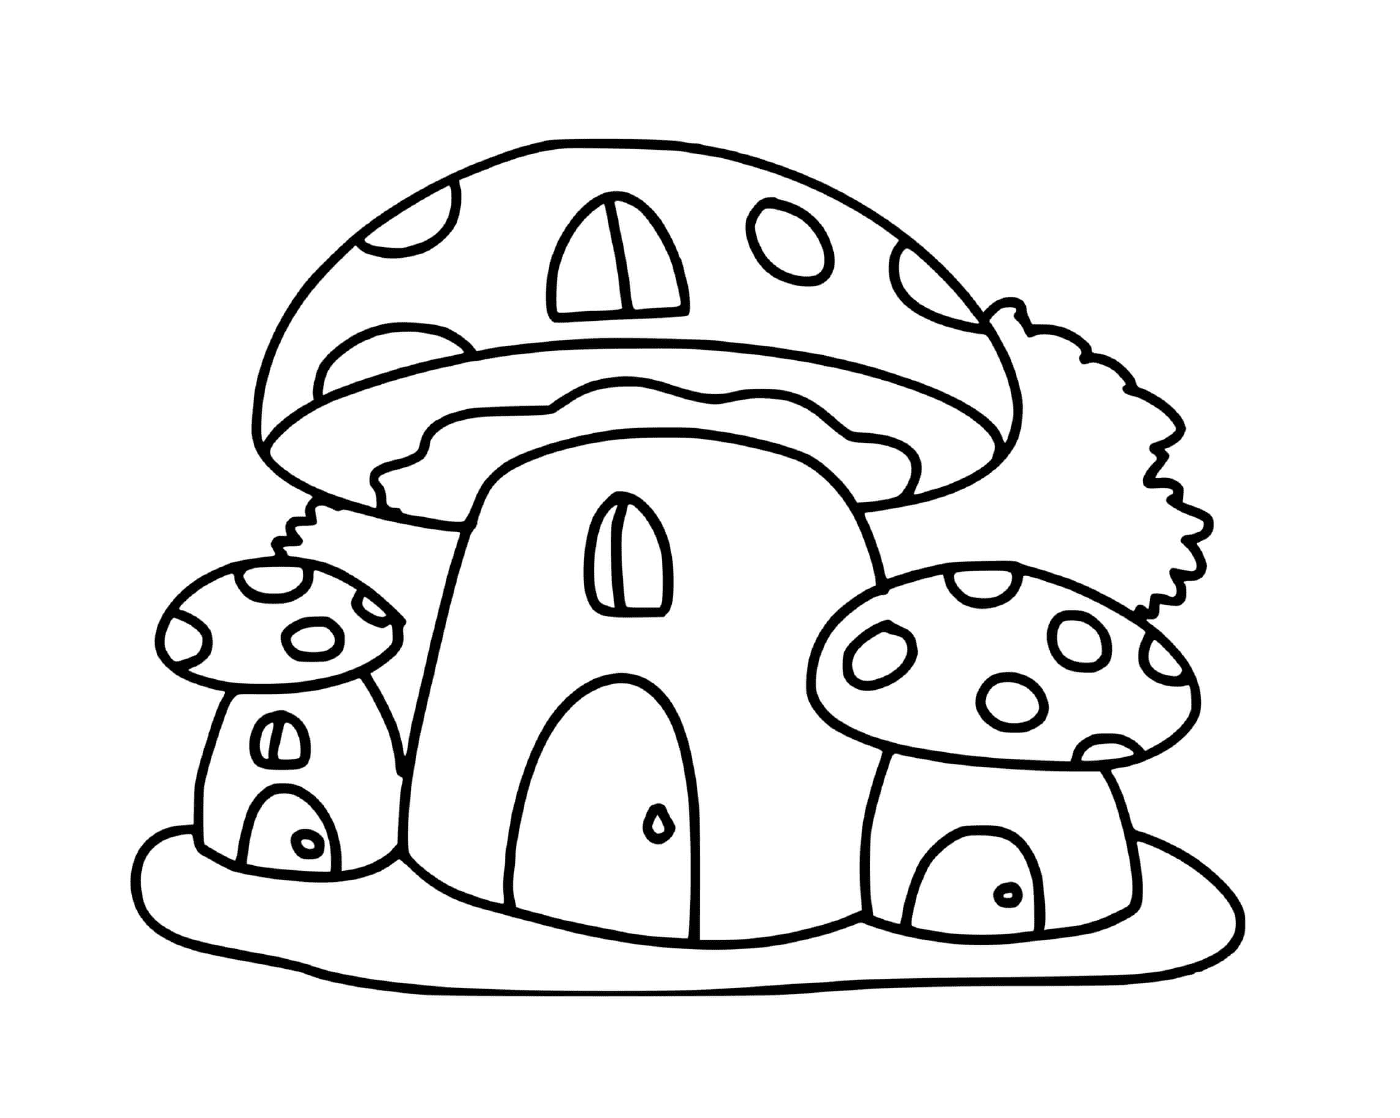  Casas en forma de hongos, una escena mágica 